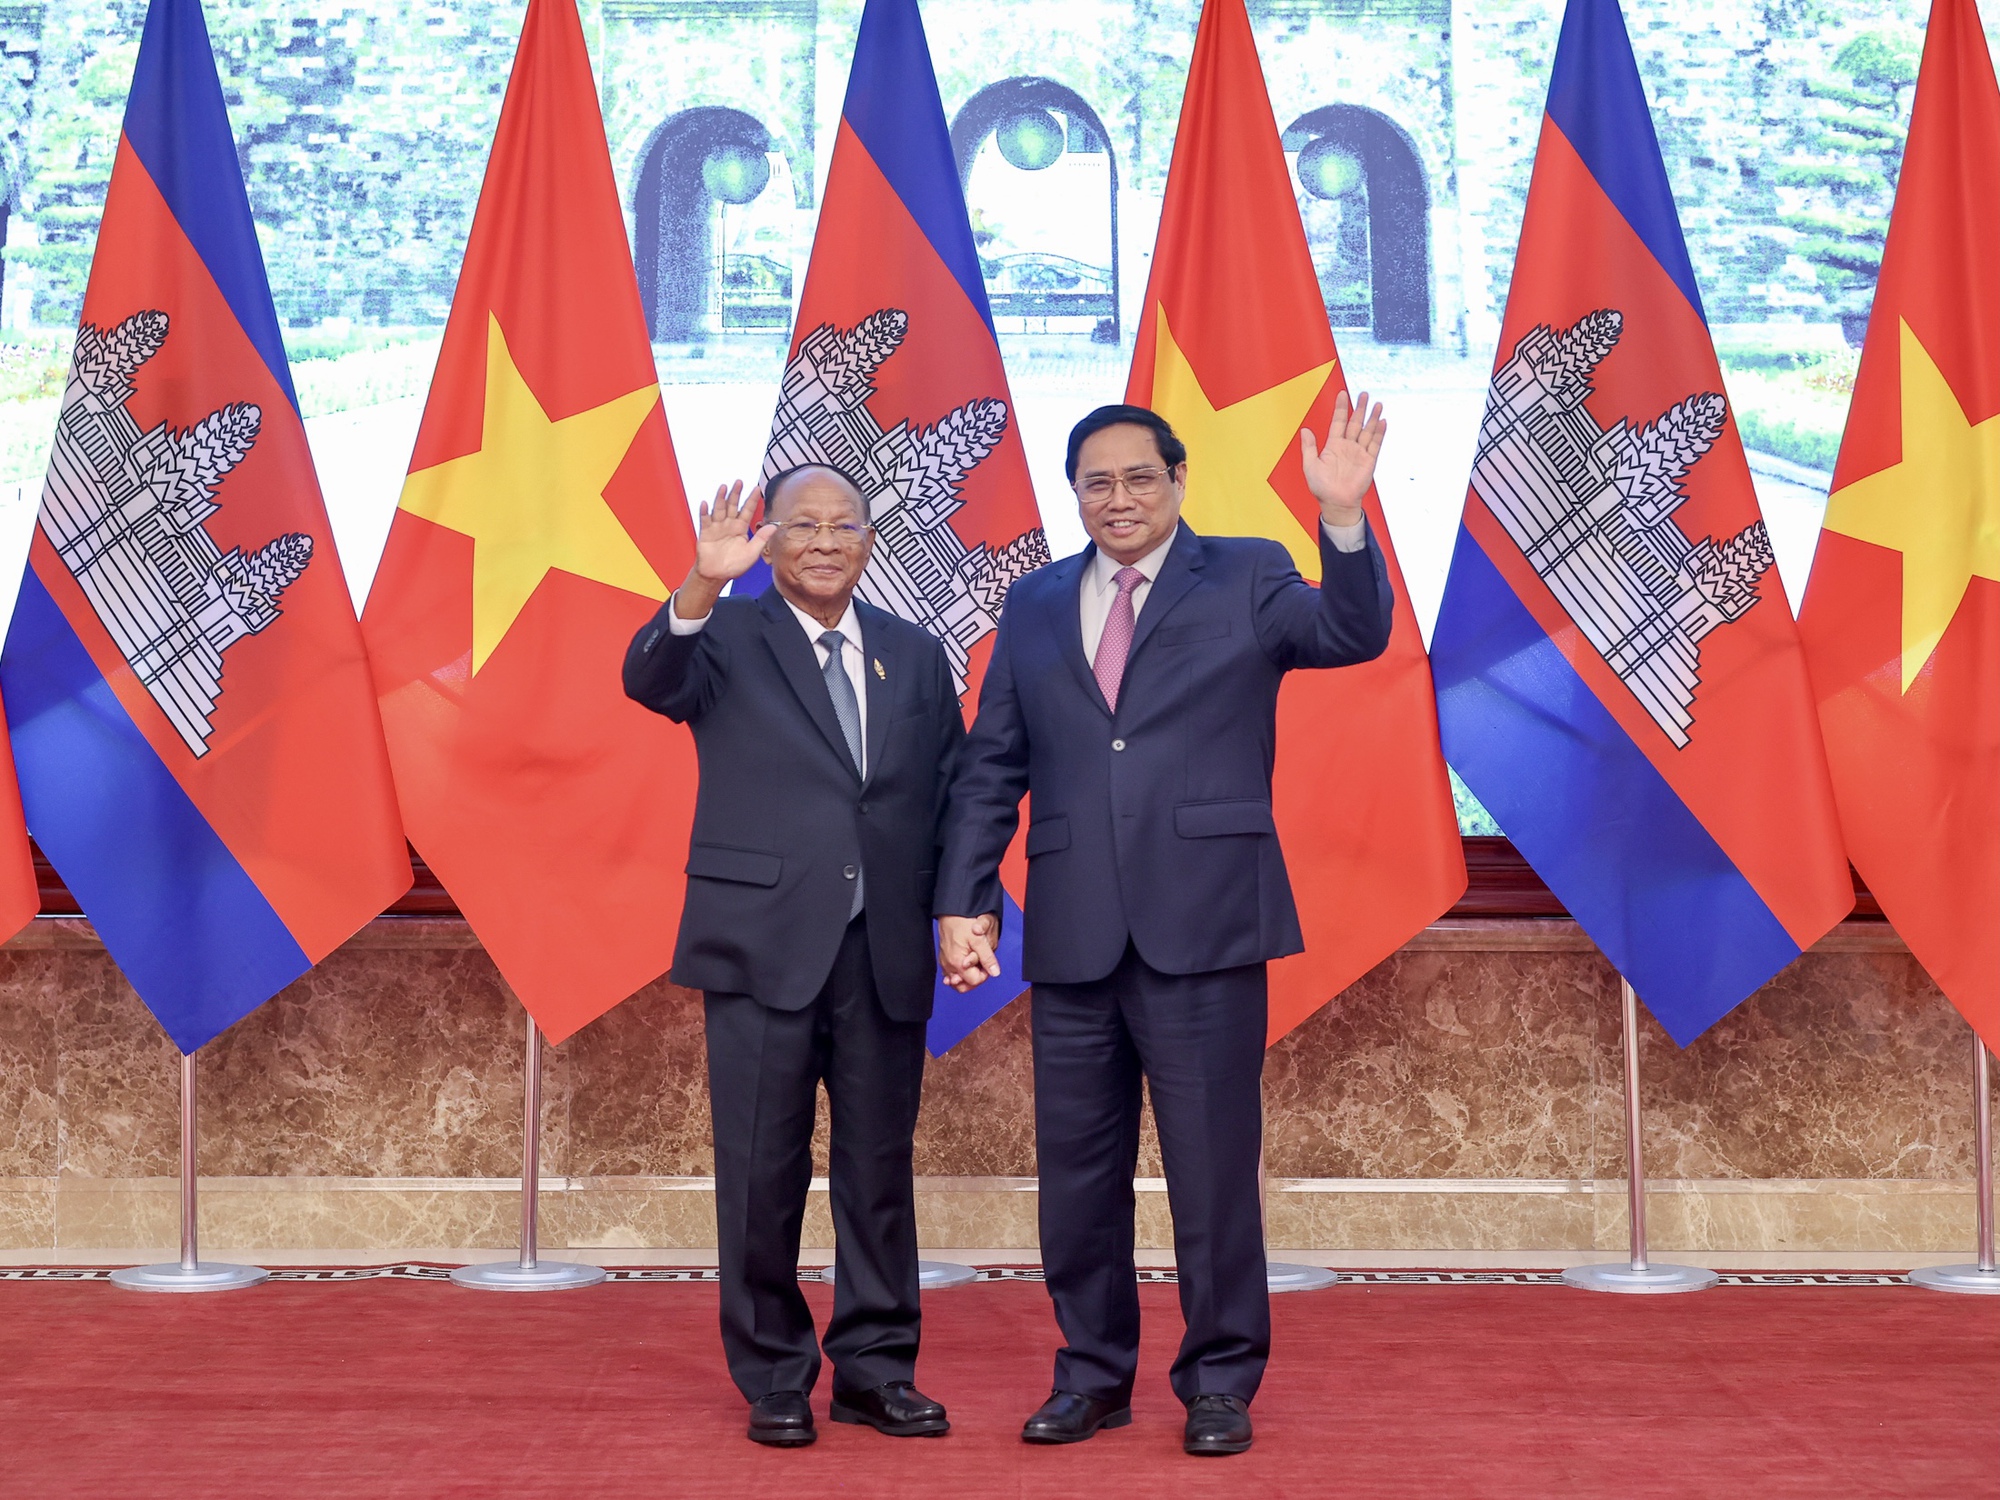 Đầu tư Việt Nam tại Campuchia: Việc đầu tư của Việt Nam tại Campuchia đã tạo ra nhiều tiềm năng phát triển kinh tế cho cả hai quốc gia. Với các dự án như đường sắt và điện gió, Việt Nam đang đóng góp vào việc xây dựng một khu vực Đông Nam Á phát triển và ổn định hơn. Hãy thưởng thức hình ảnh liên quan đến đầu tư của Việt Nam tại Campuchia để hiểu rõ hơn về mối quan hệ này.